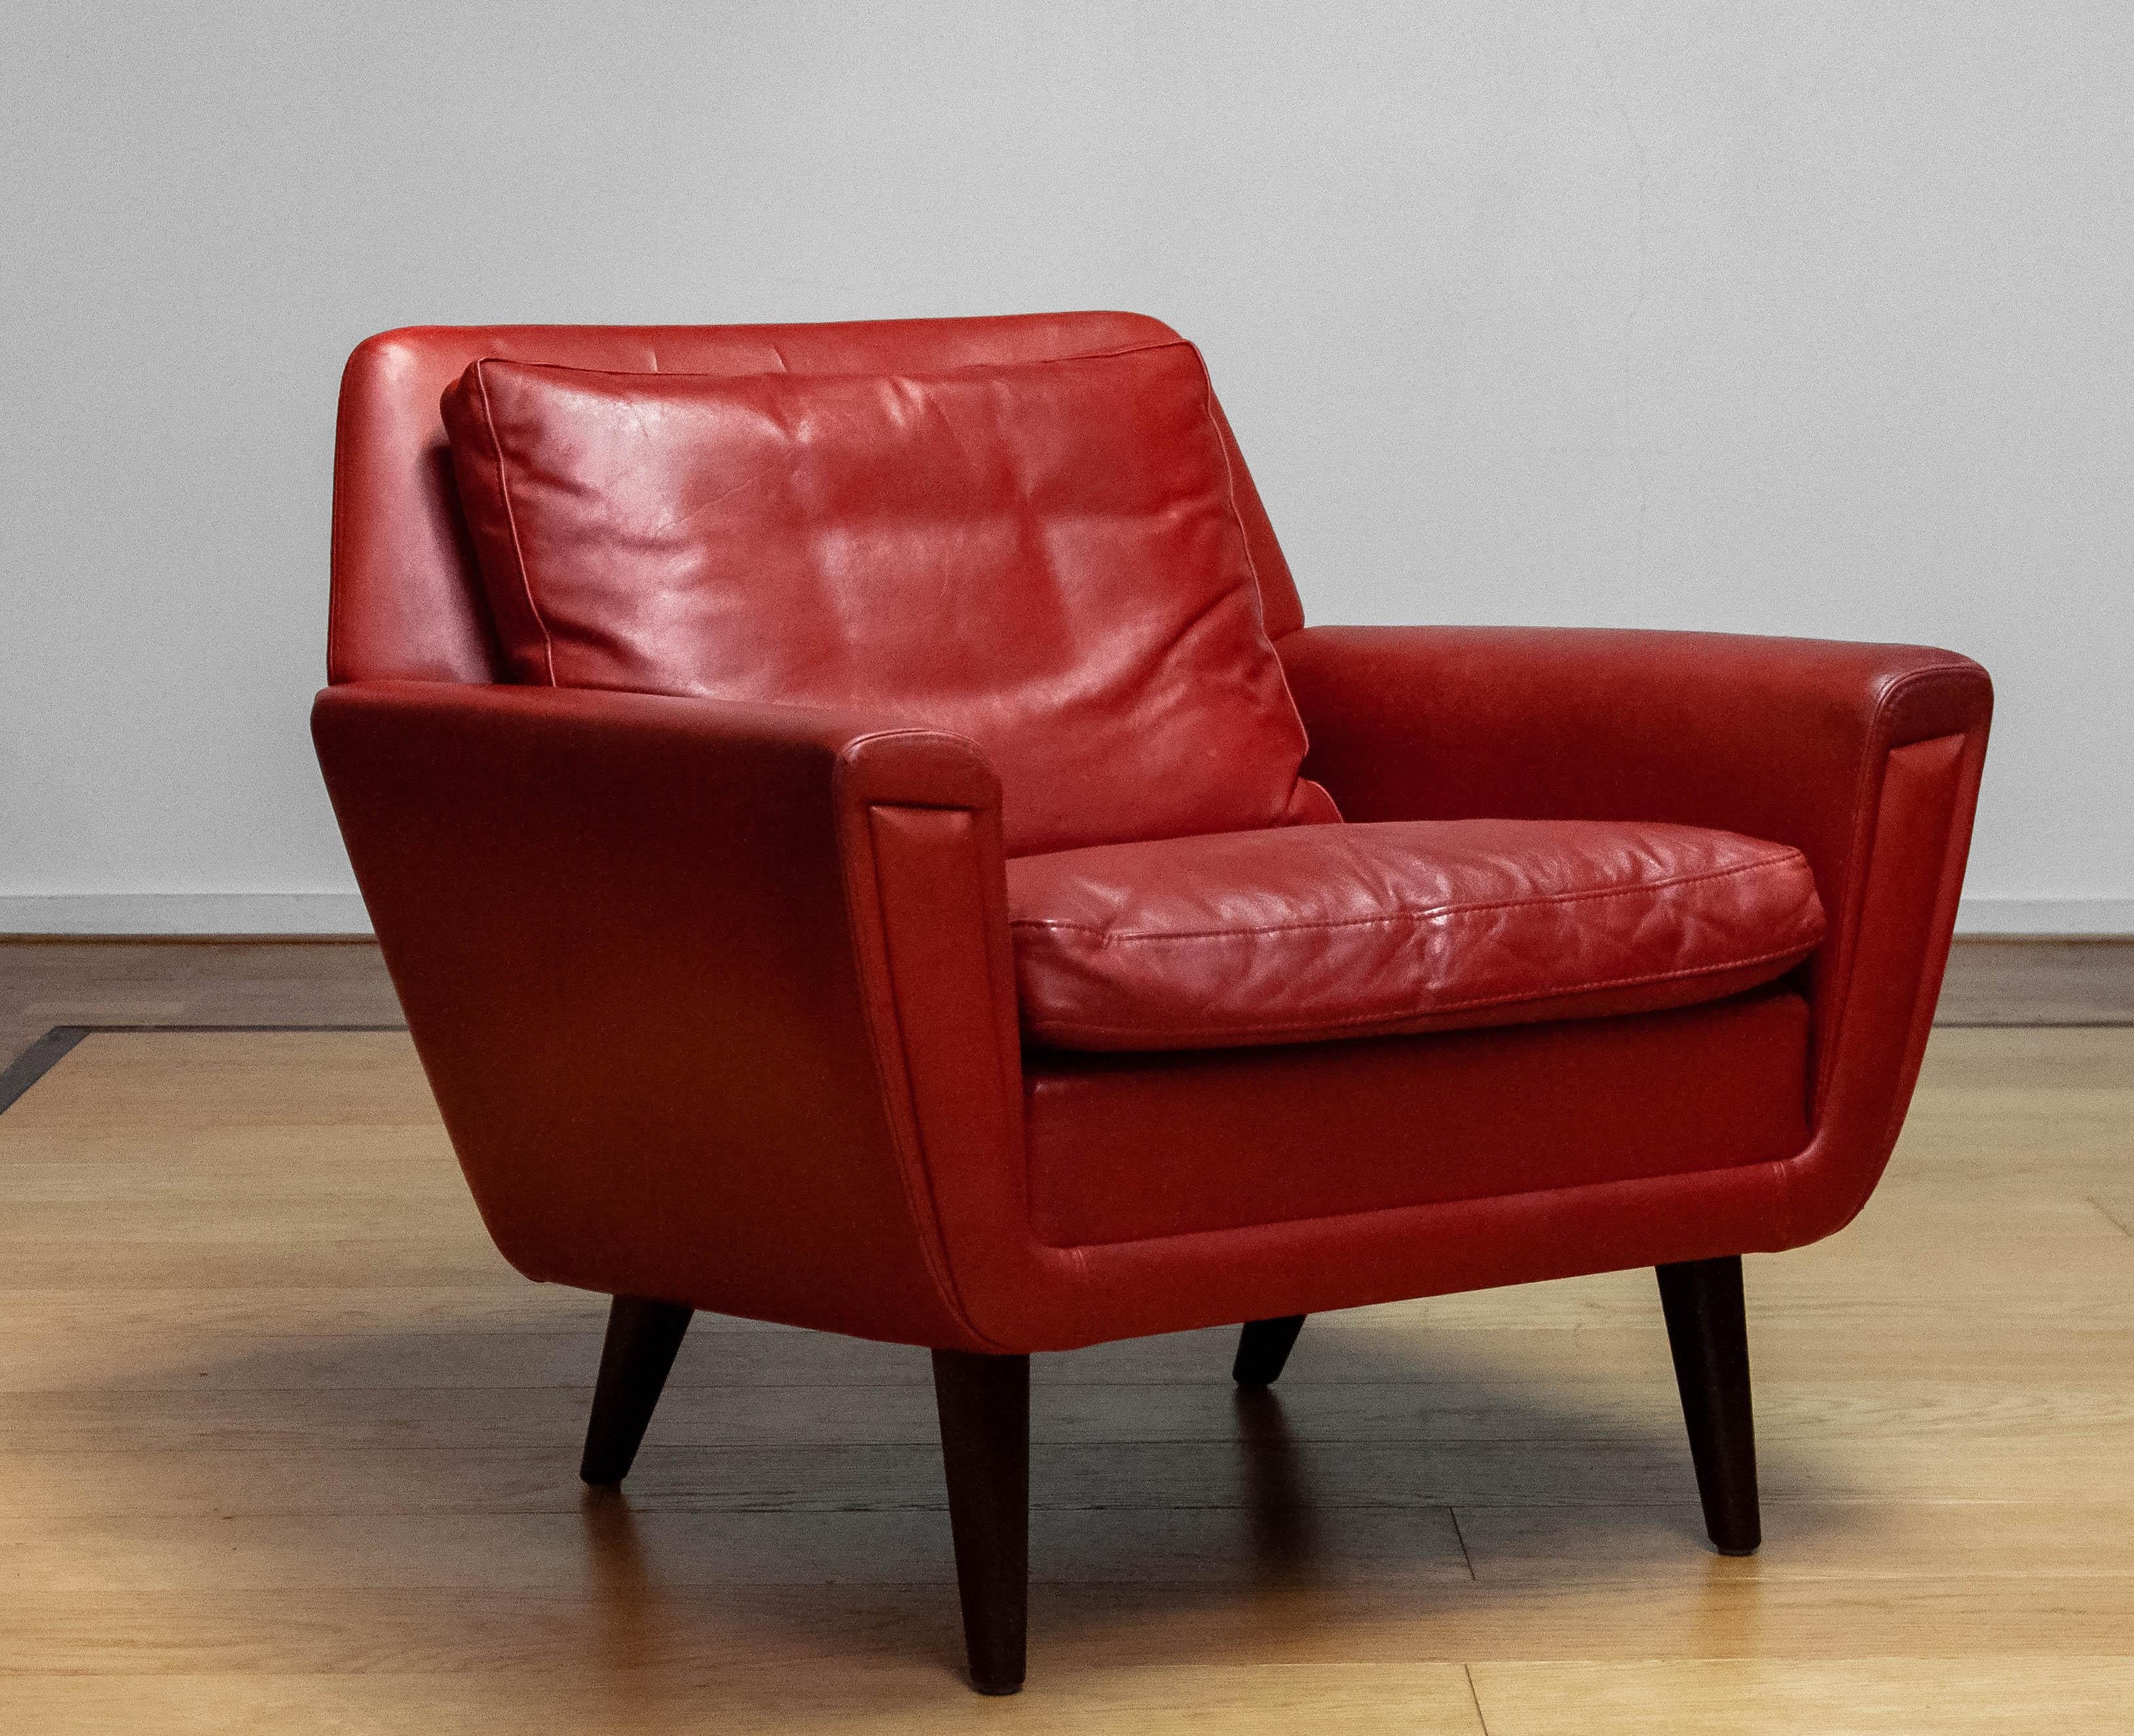 Schöne 1960er Jahre  Lounge / Sessel hergestellt in Dänemark 
Dieser Stuhl ist mit rotem Leder gepolstert und steht auf Beinen aus Buche.
Der Sitz und auch die Rückenlehne haben einige Flecken, siehe die Detailfotos.
Technisch ist der Stuhl in einem